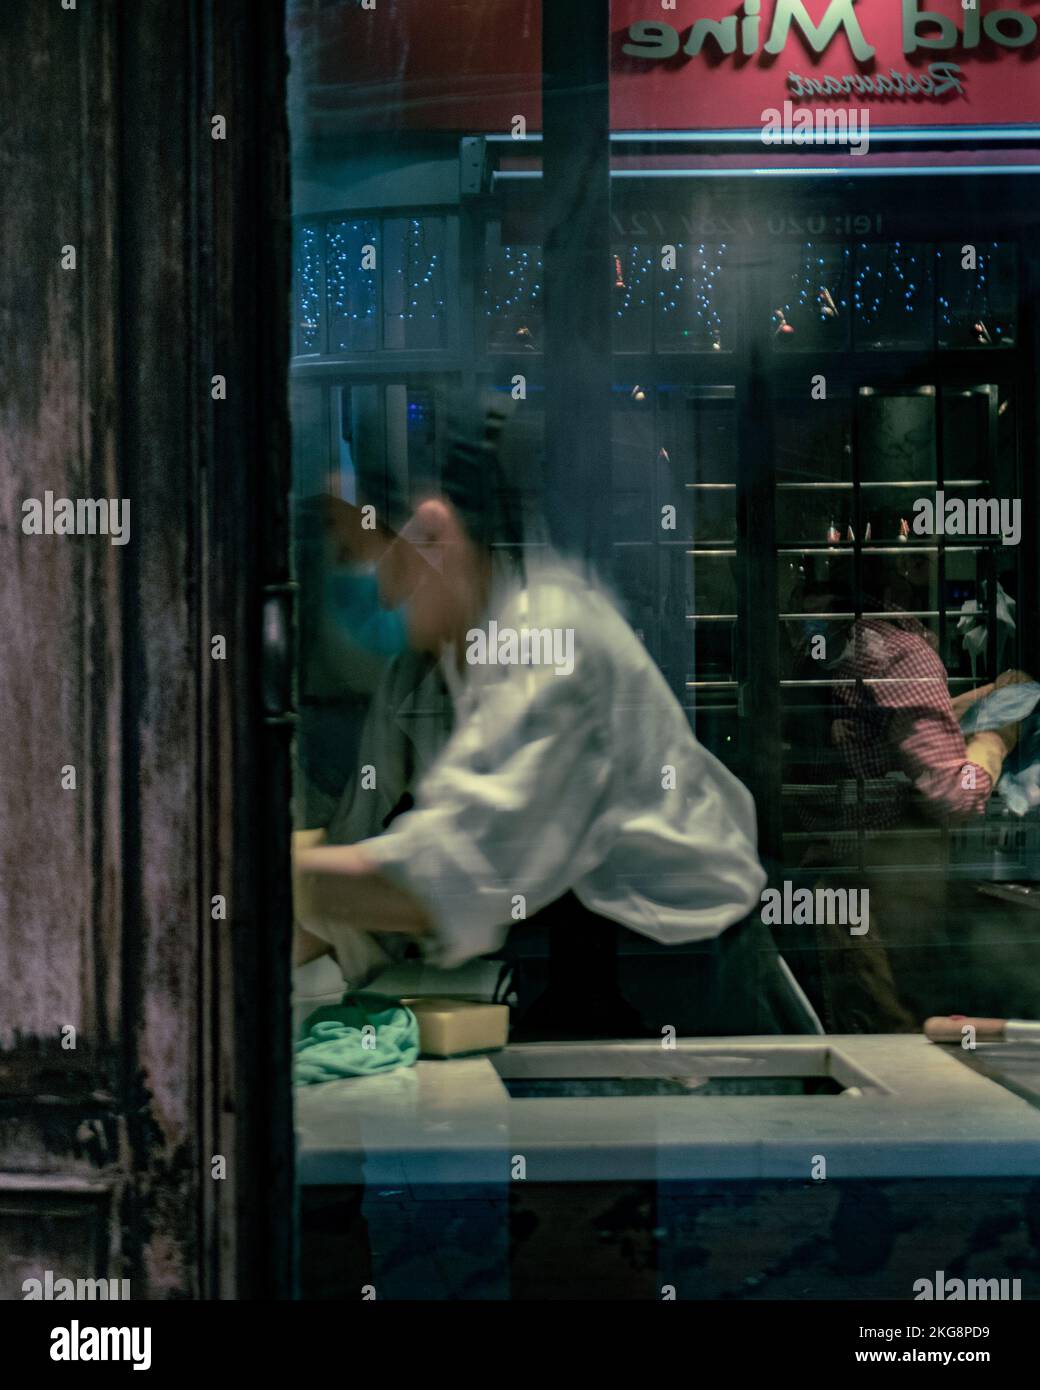 Une travailleuse dans un restaurant de Soho, Londres, effectuant une tâche, photographiée à travers une fenêtre avec de la condensation. Banque D'Images